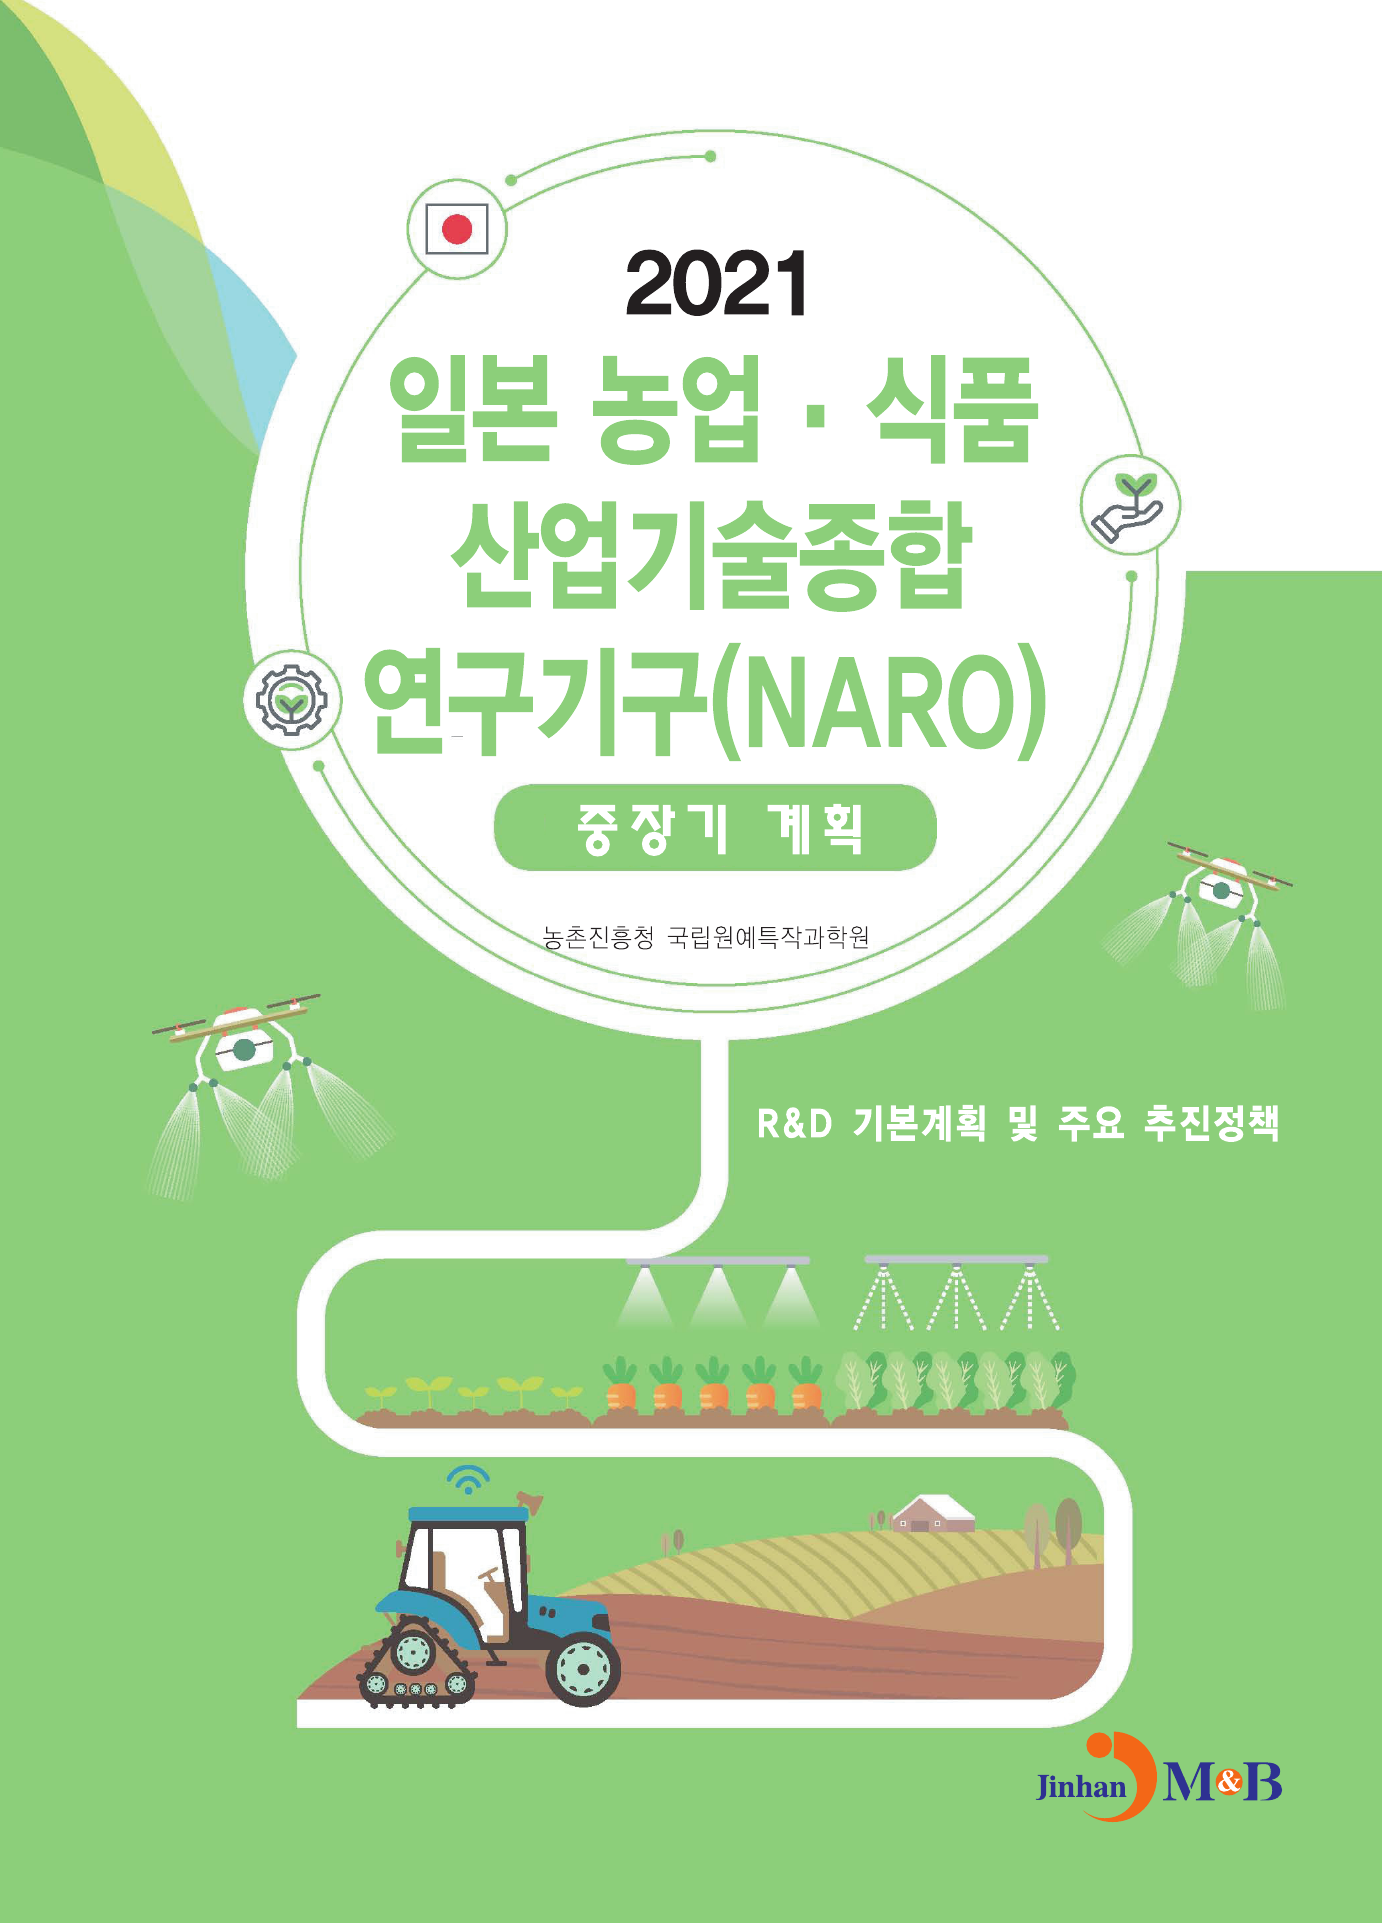 일본 농업·식품 산업기술종합 연구기구(NARO) 중장기계획(2021)